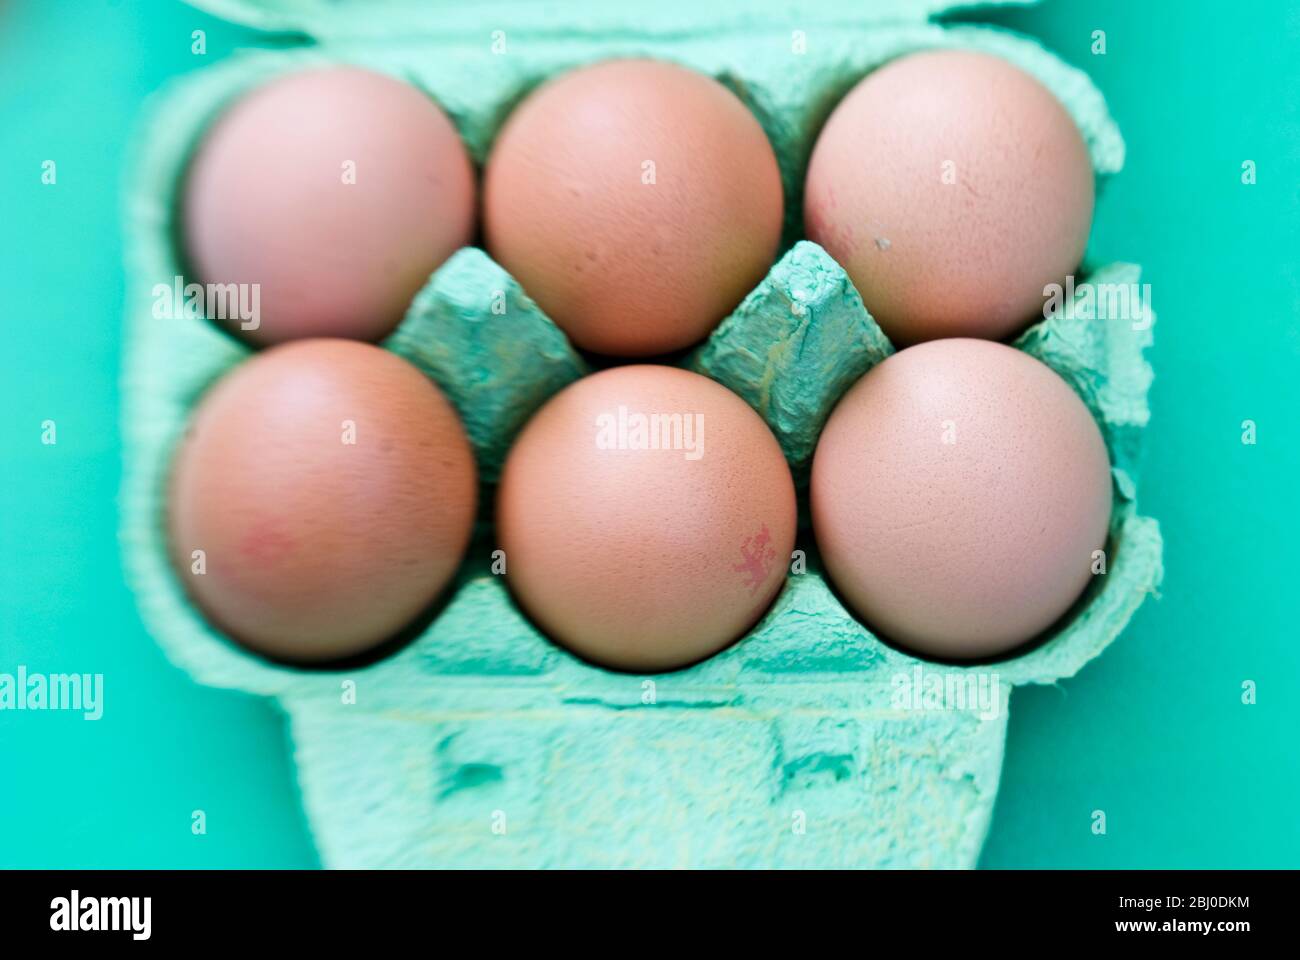 Ein halbes Dutzend Eier in grüner Eierbox. - Stockfoto